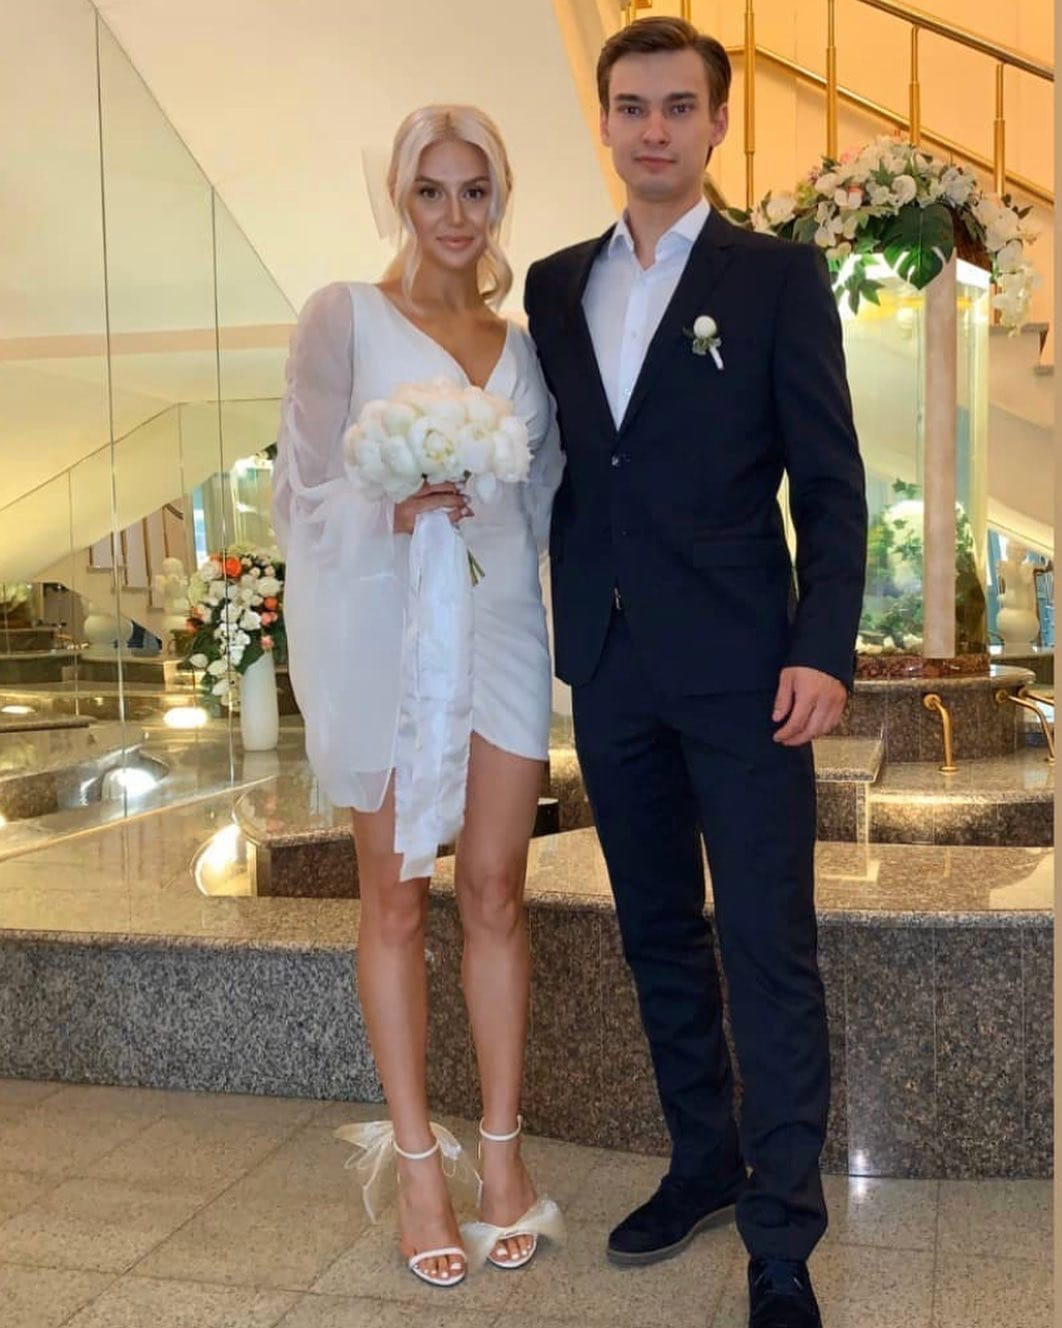 22-летний вратарь Владислав Гросс 5 июня женился на своей девушке Елизавете<br><br>